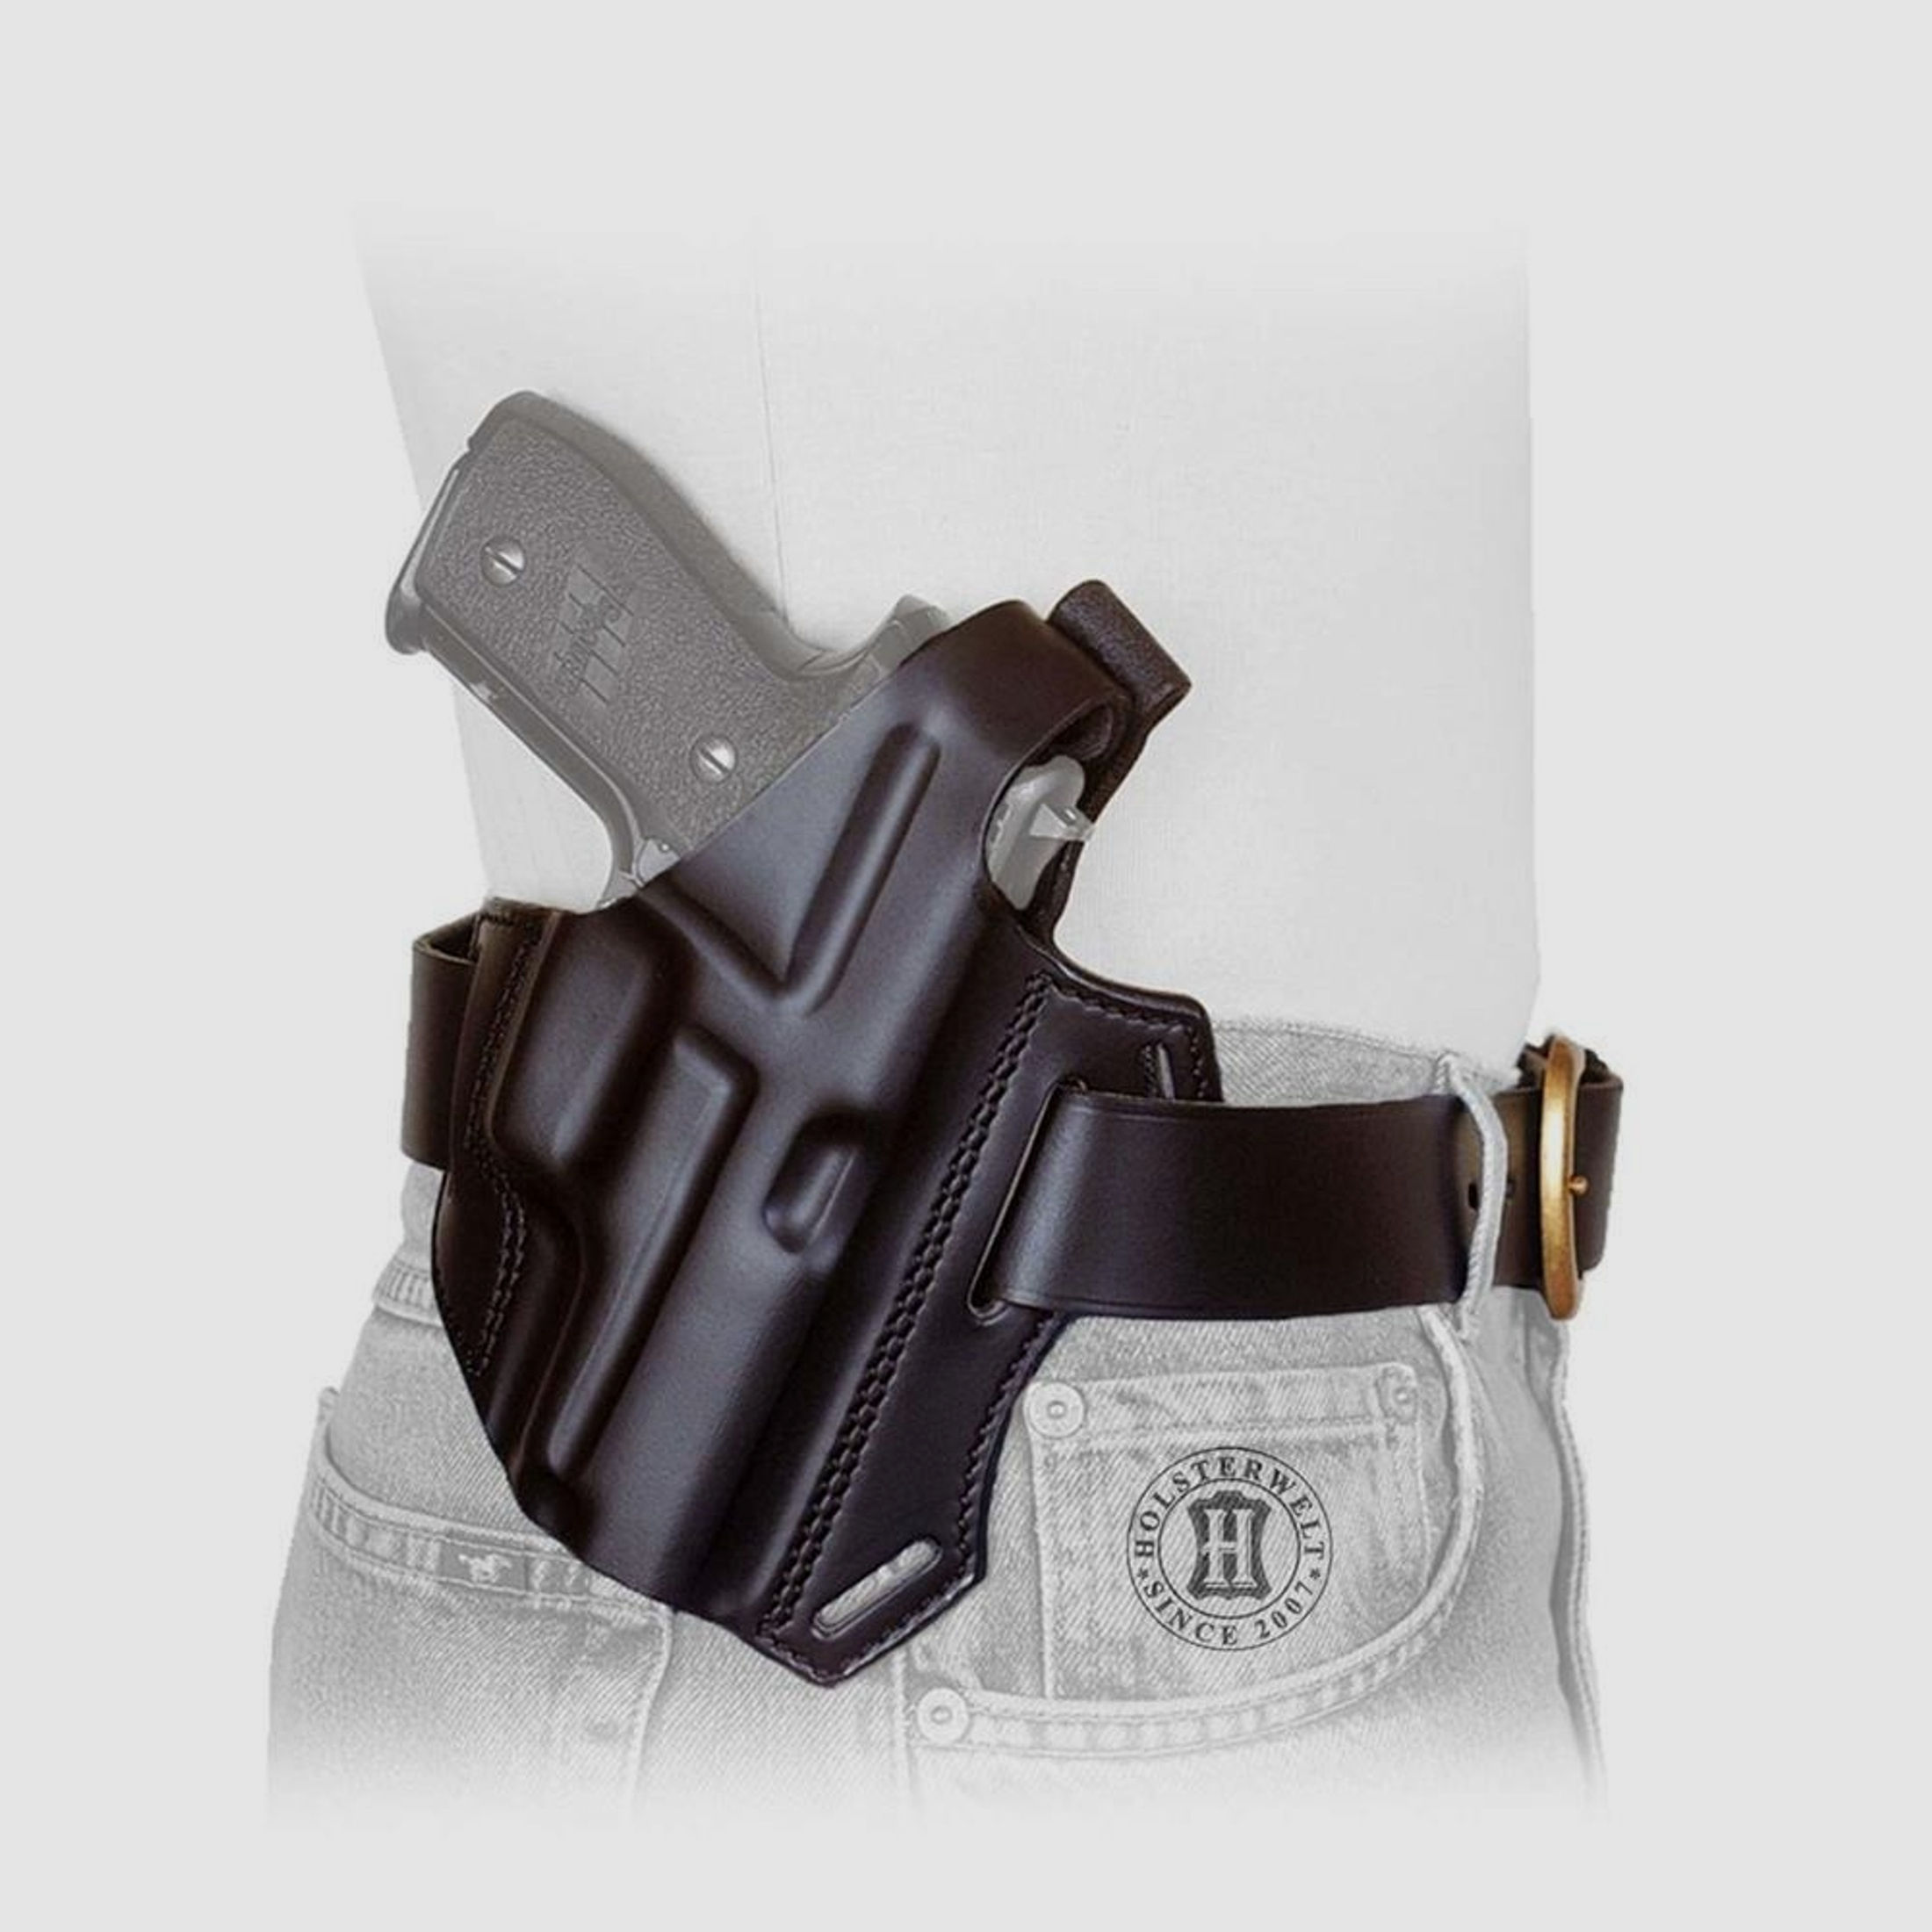 Gürtelholster / Schulterholster MULTI VARIO Glock 20/21/29/30, Zoraki 917-Braun-Linkshänder